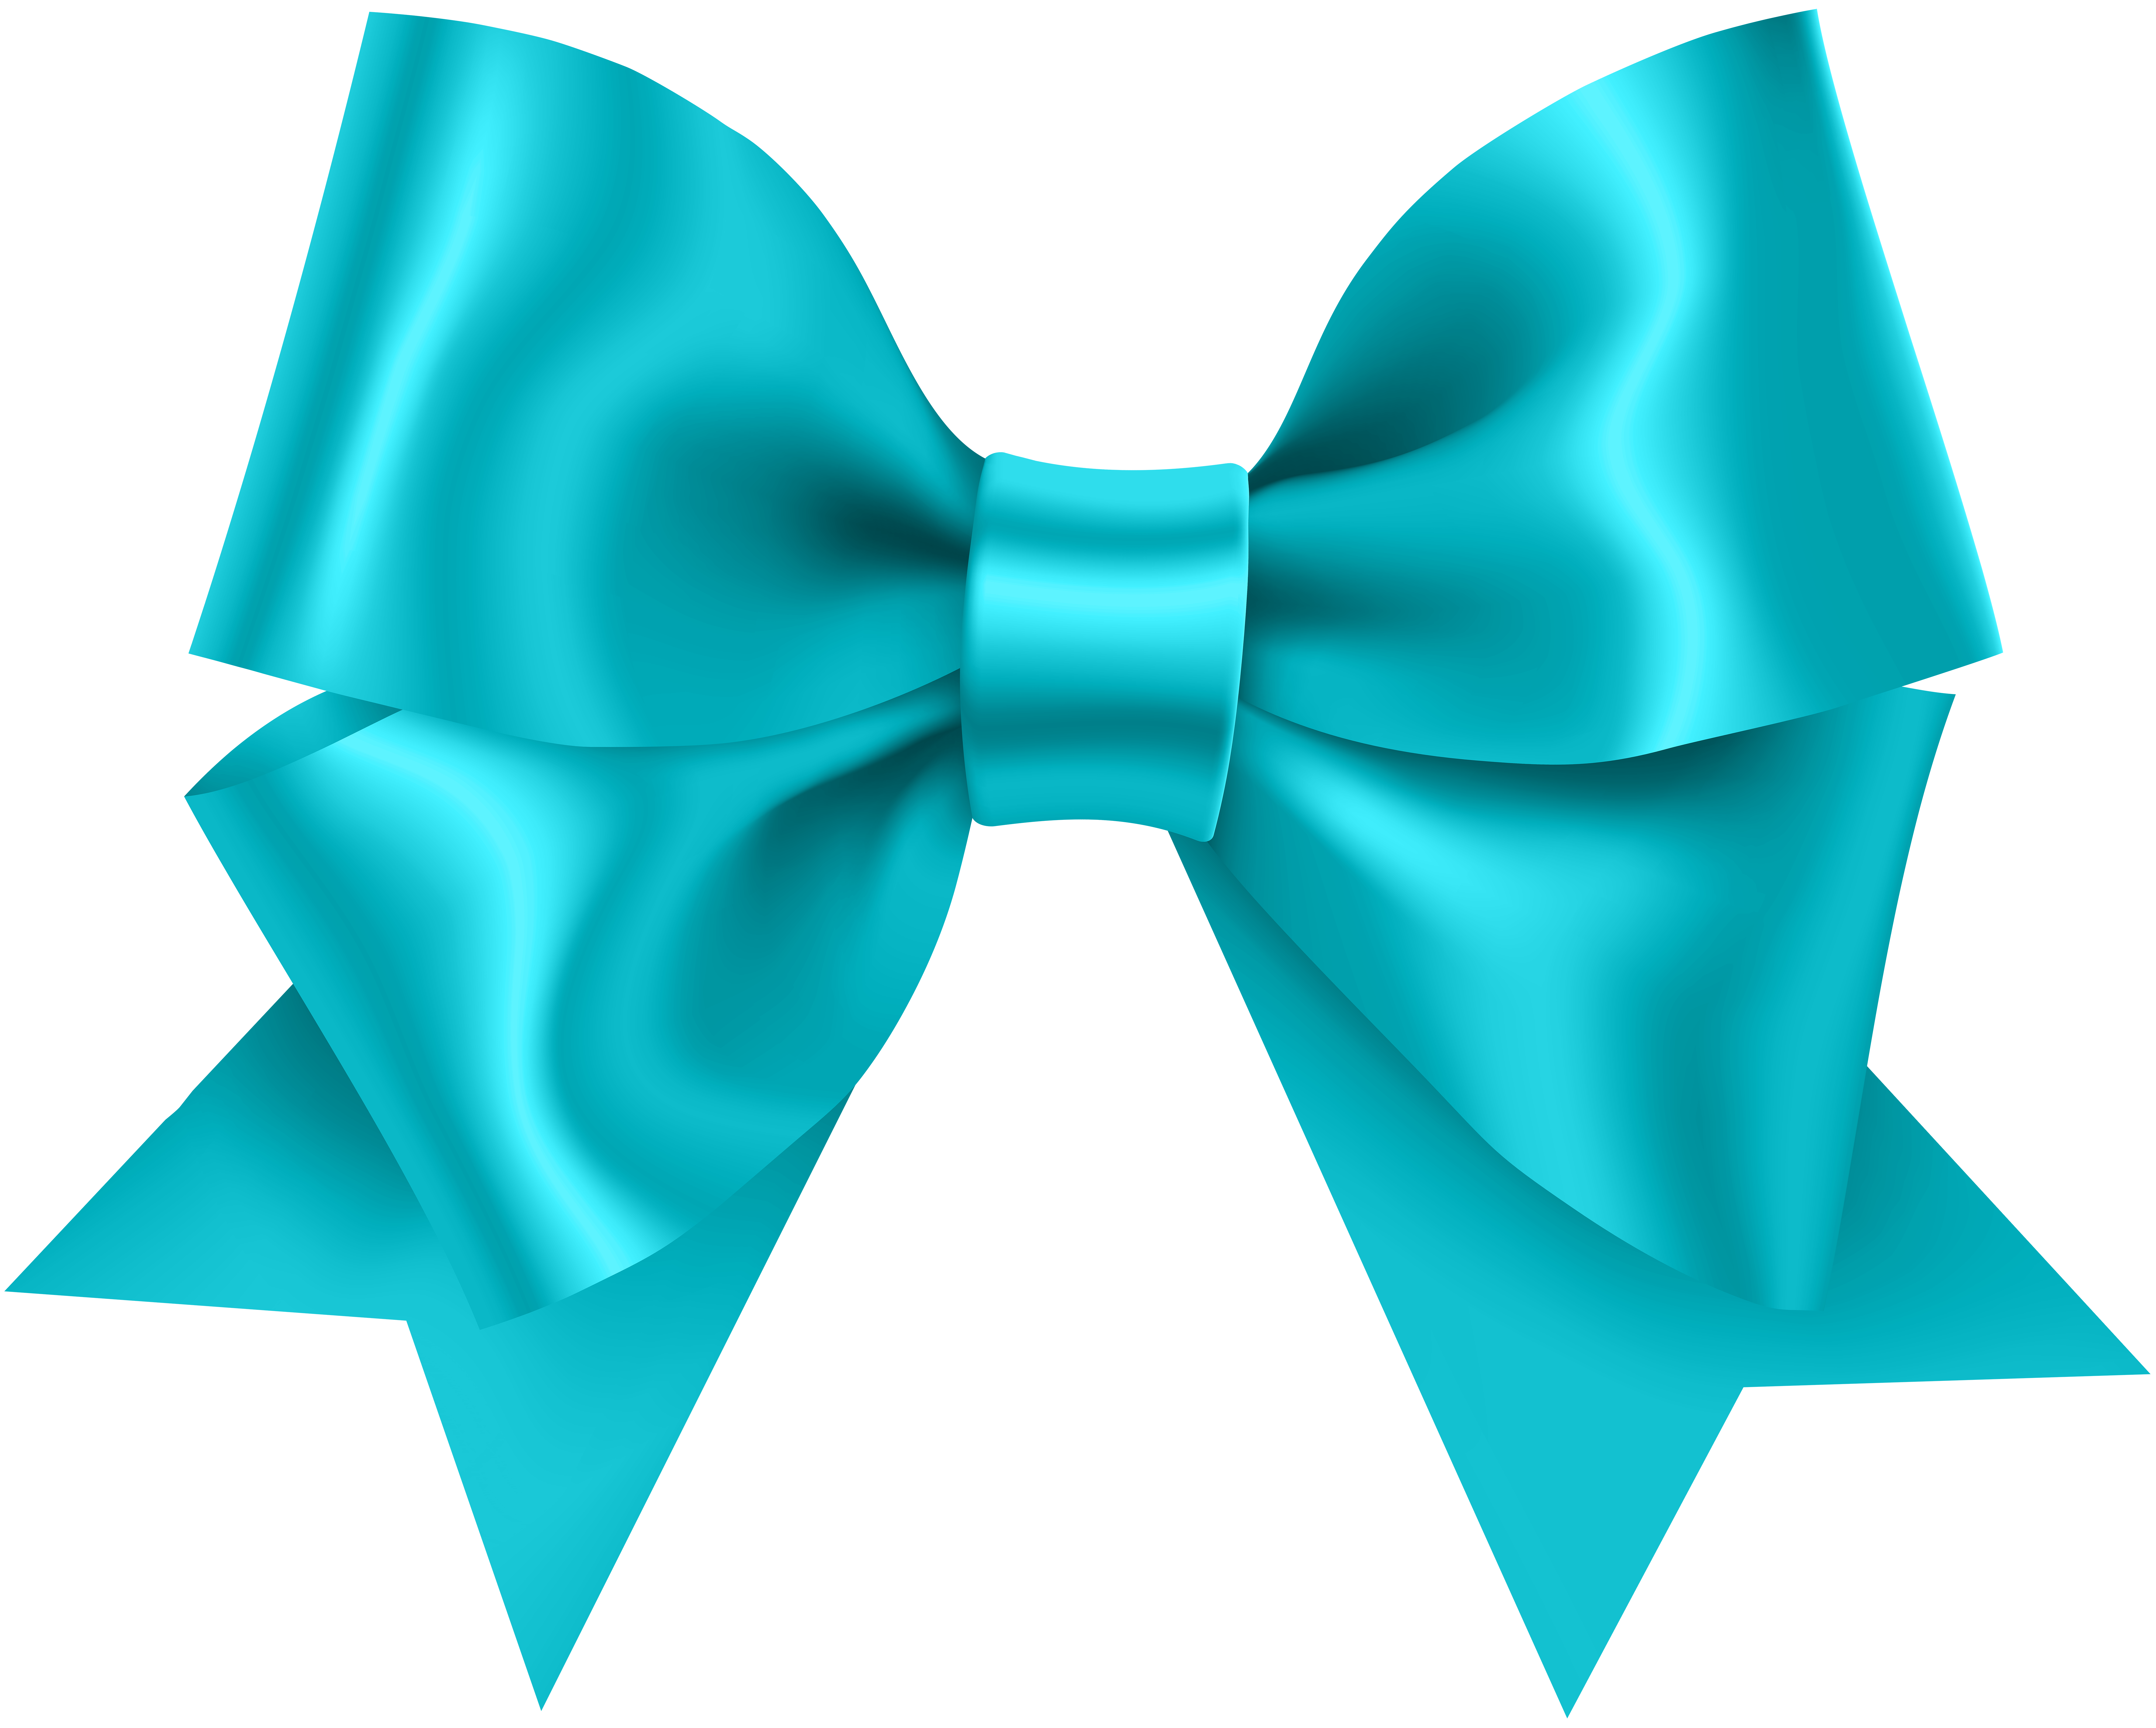 Blue Bow Transparent PNG Clip Art Image​